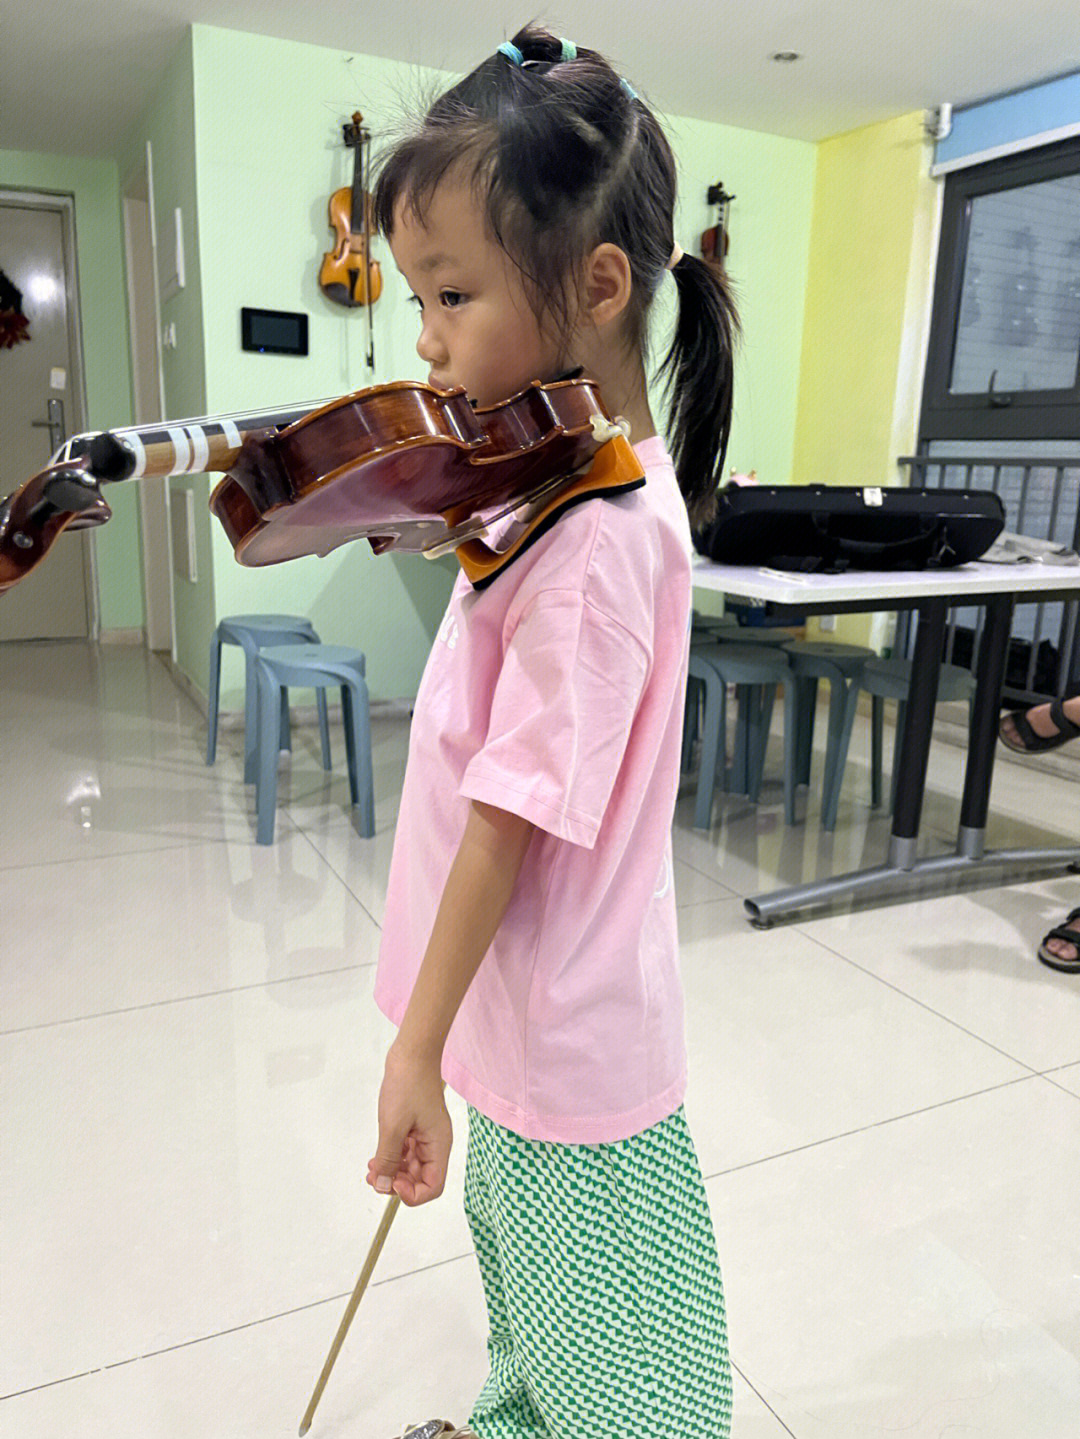 小提琴夹琴的正确方式图片